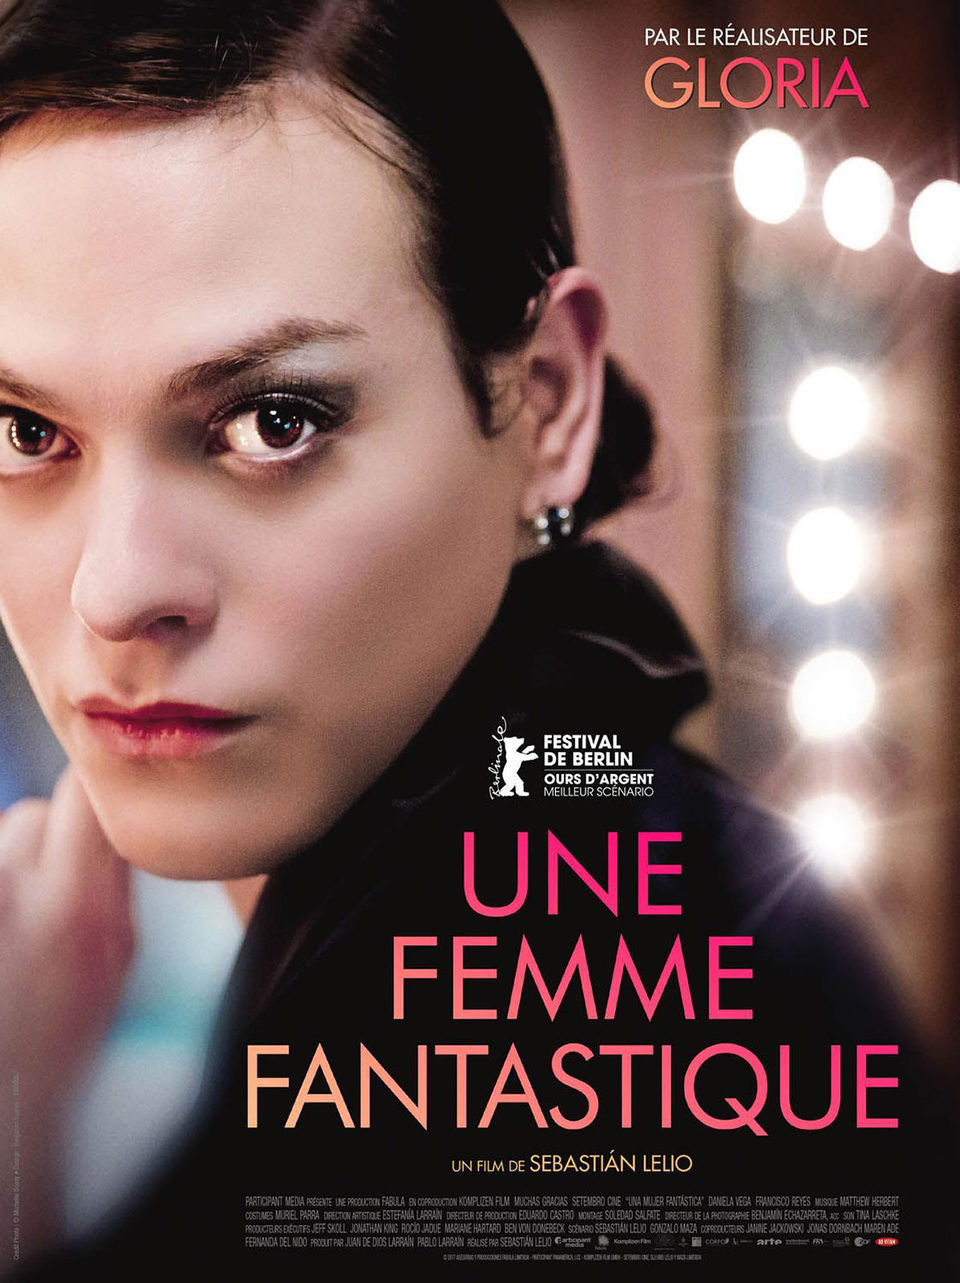 Poster of A Fantastic Woman - Francia